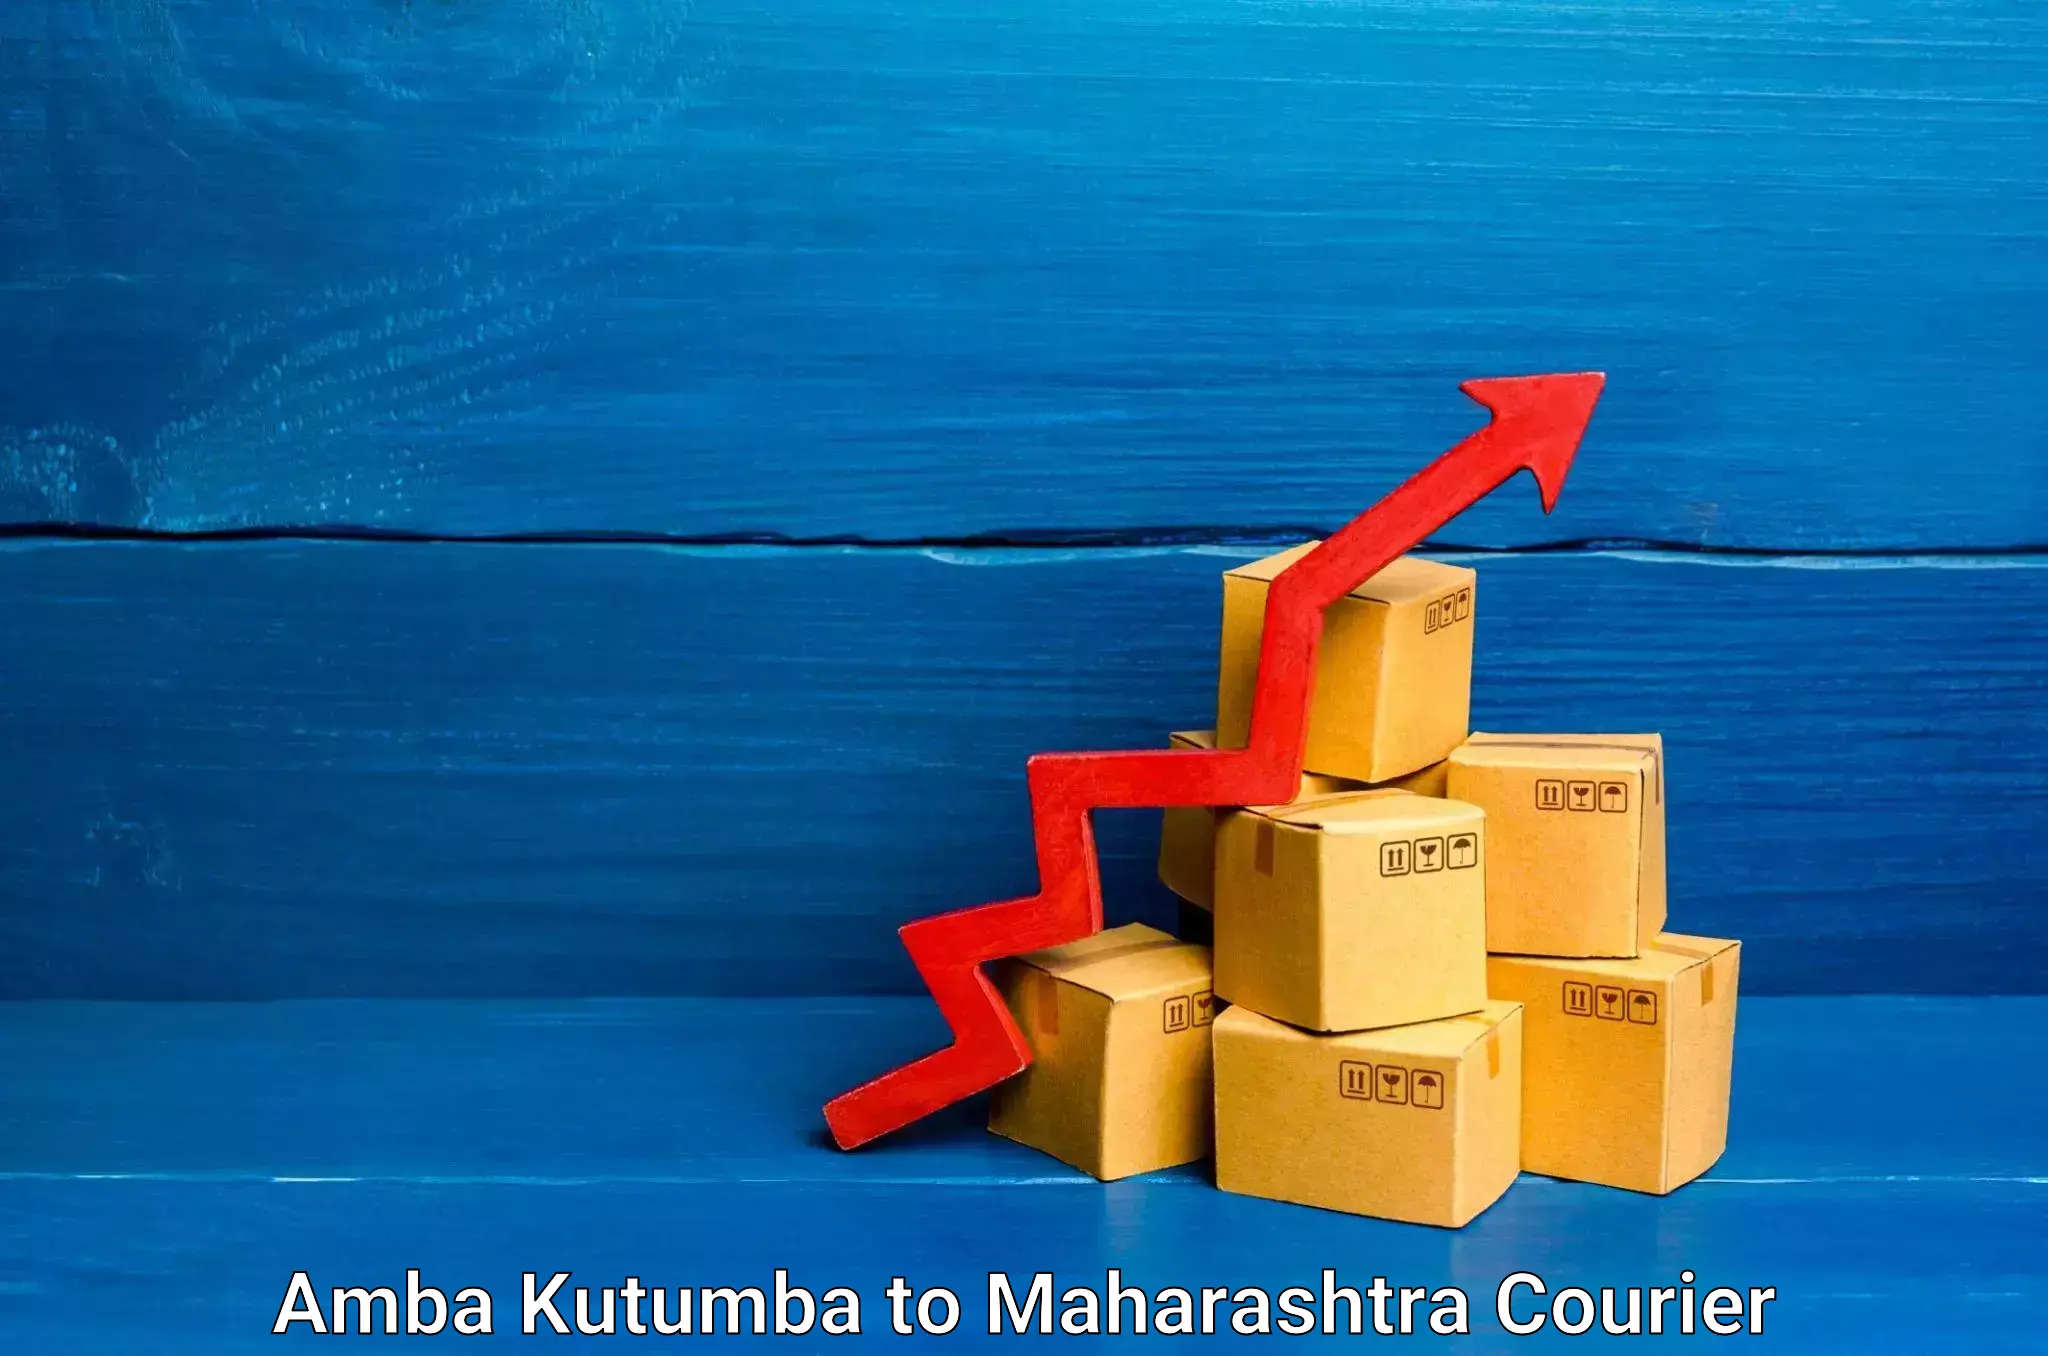 Furniture moving experts Amba Kutumba to Chembur